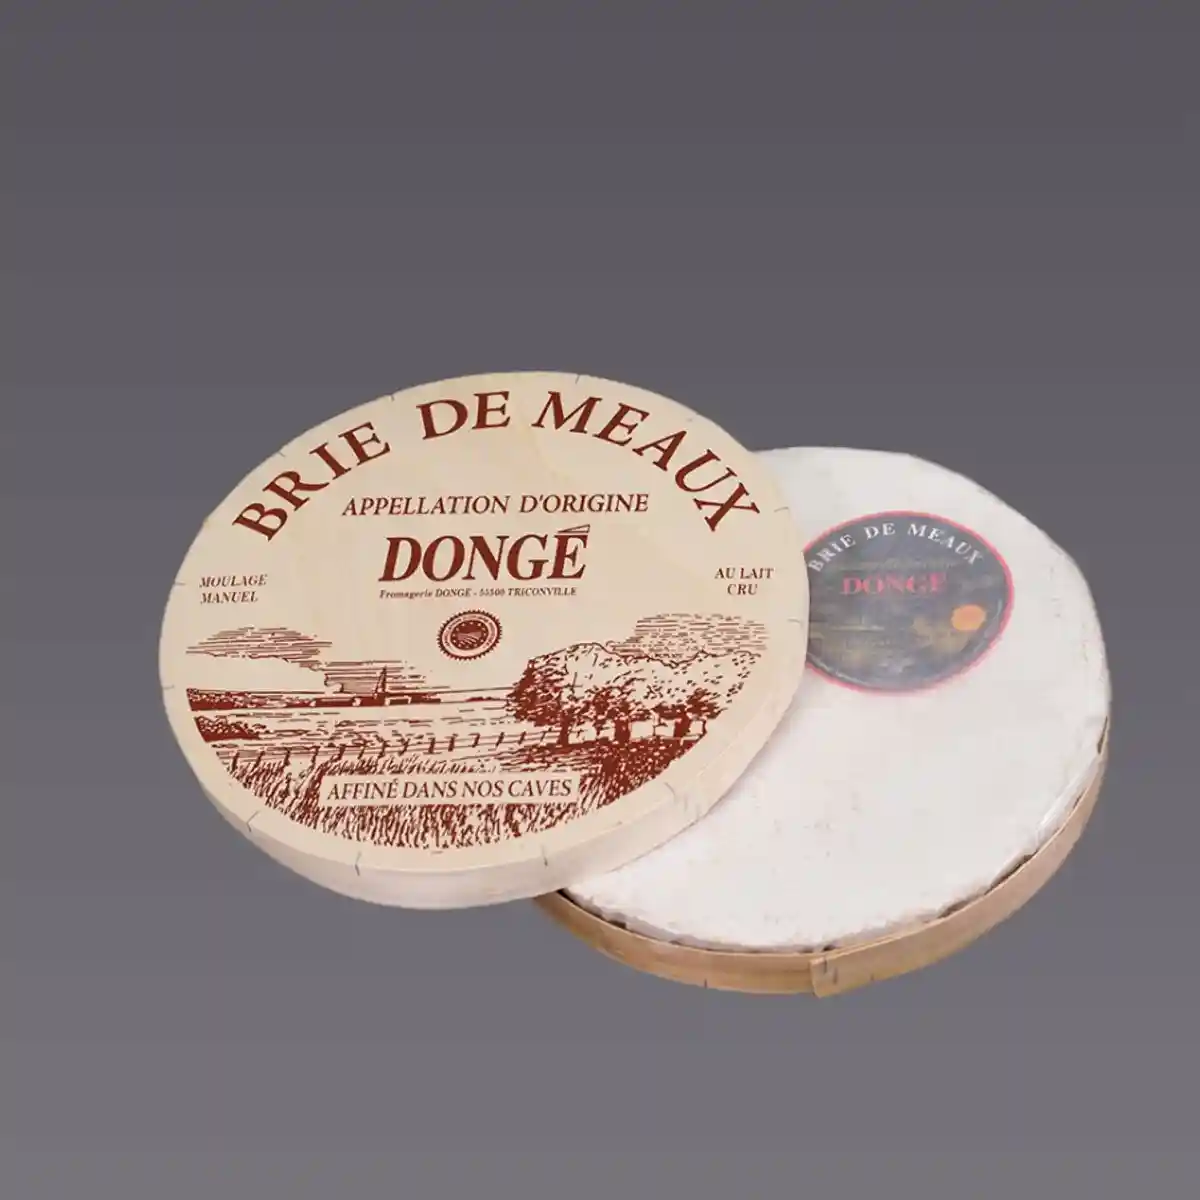 Начался срочный отзыв сыра Brie de Meaux в Германии из-за бактерий кишечной палочки. Фото: aussiedlerbote.de